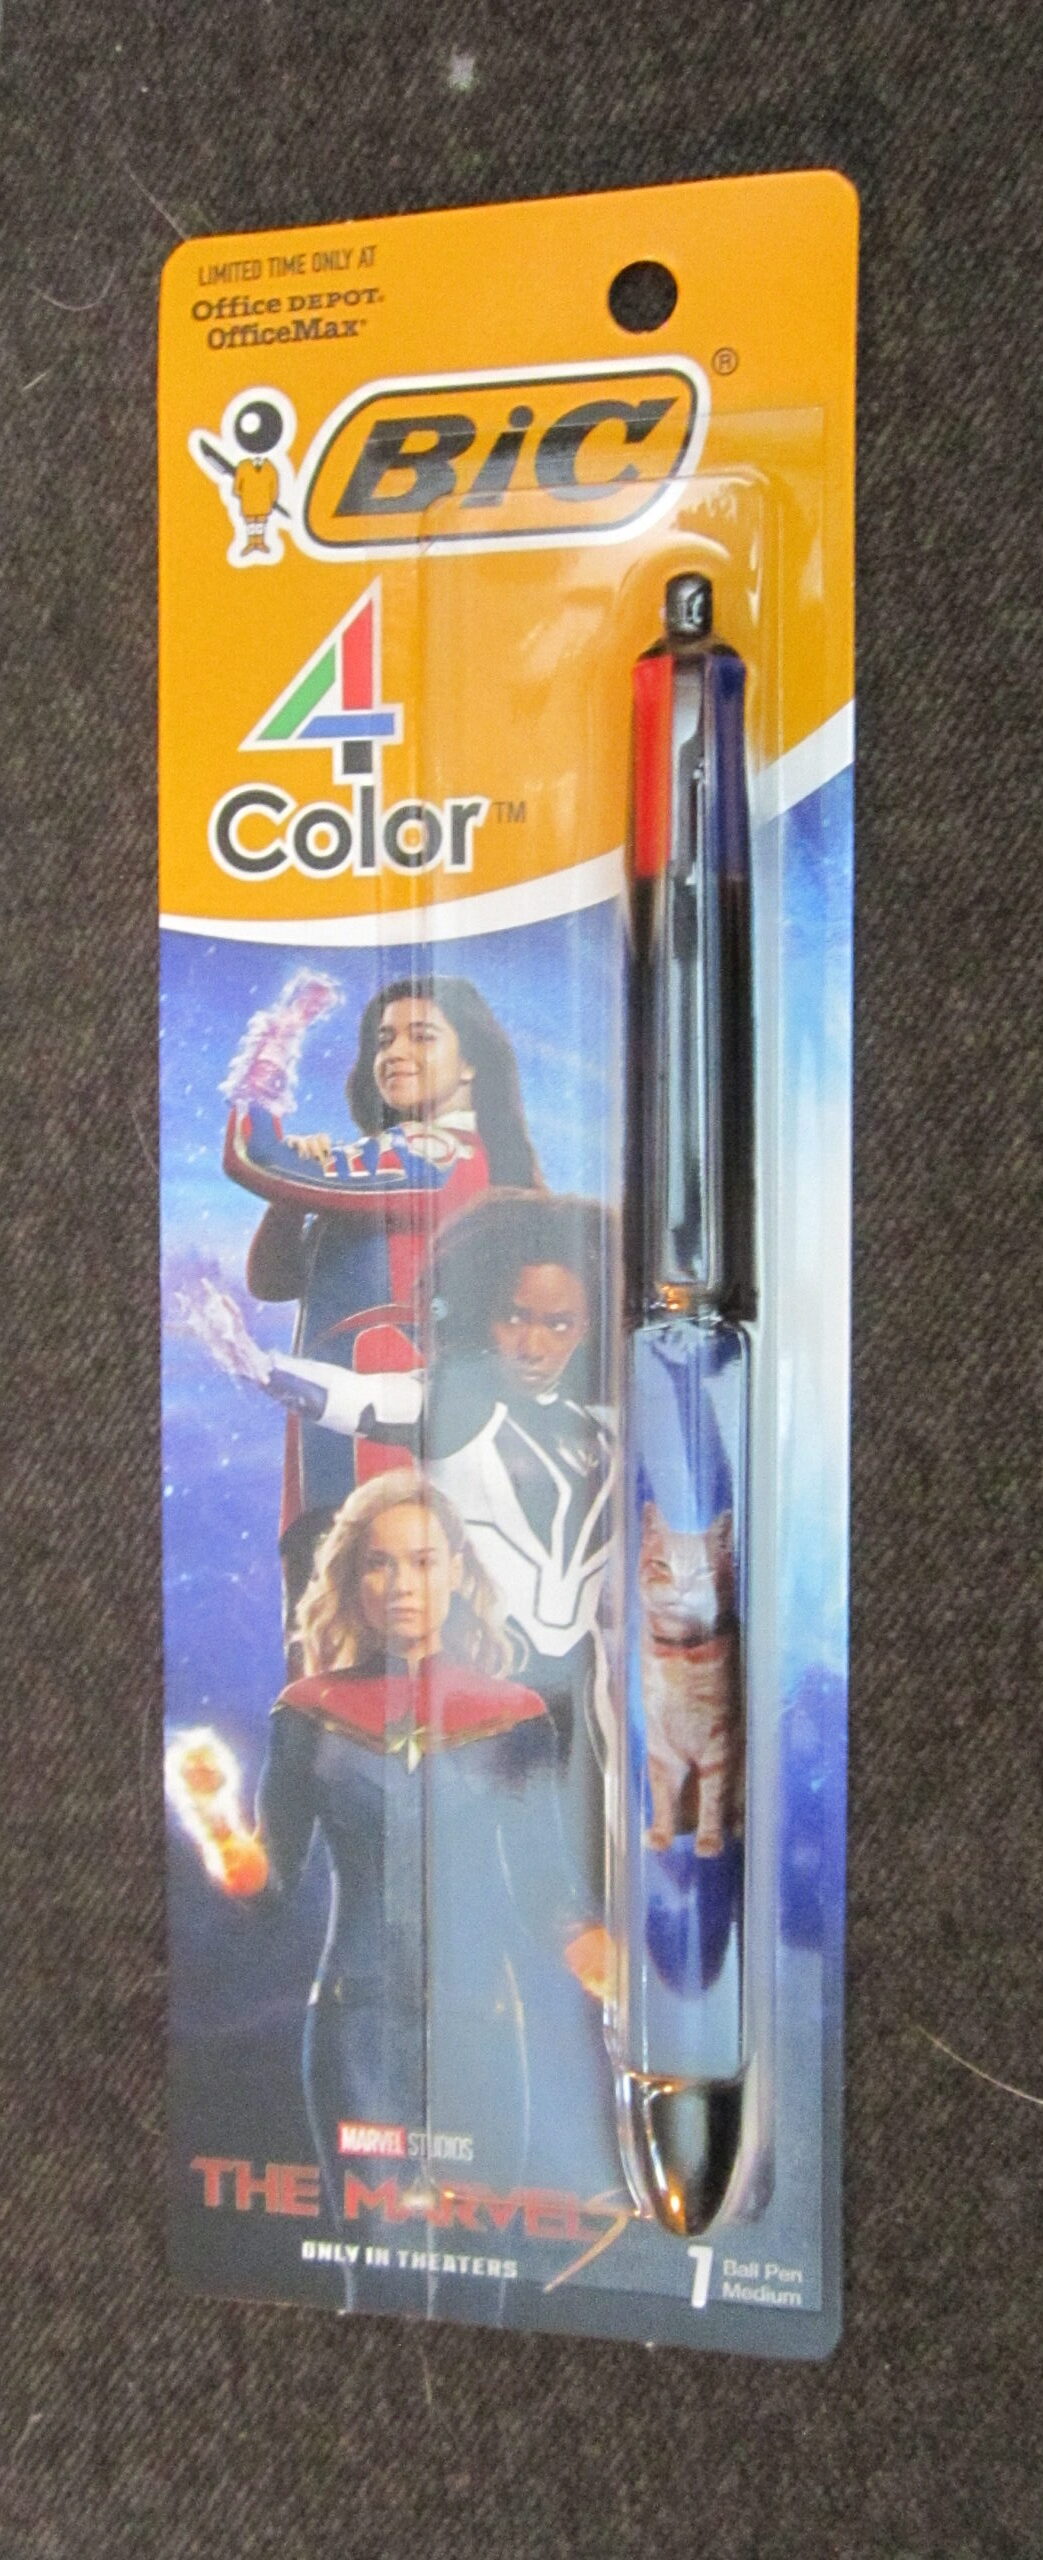 Bic Ball Pen, Classic, 4 Color, Medium (1.0 mm)